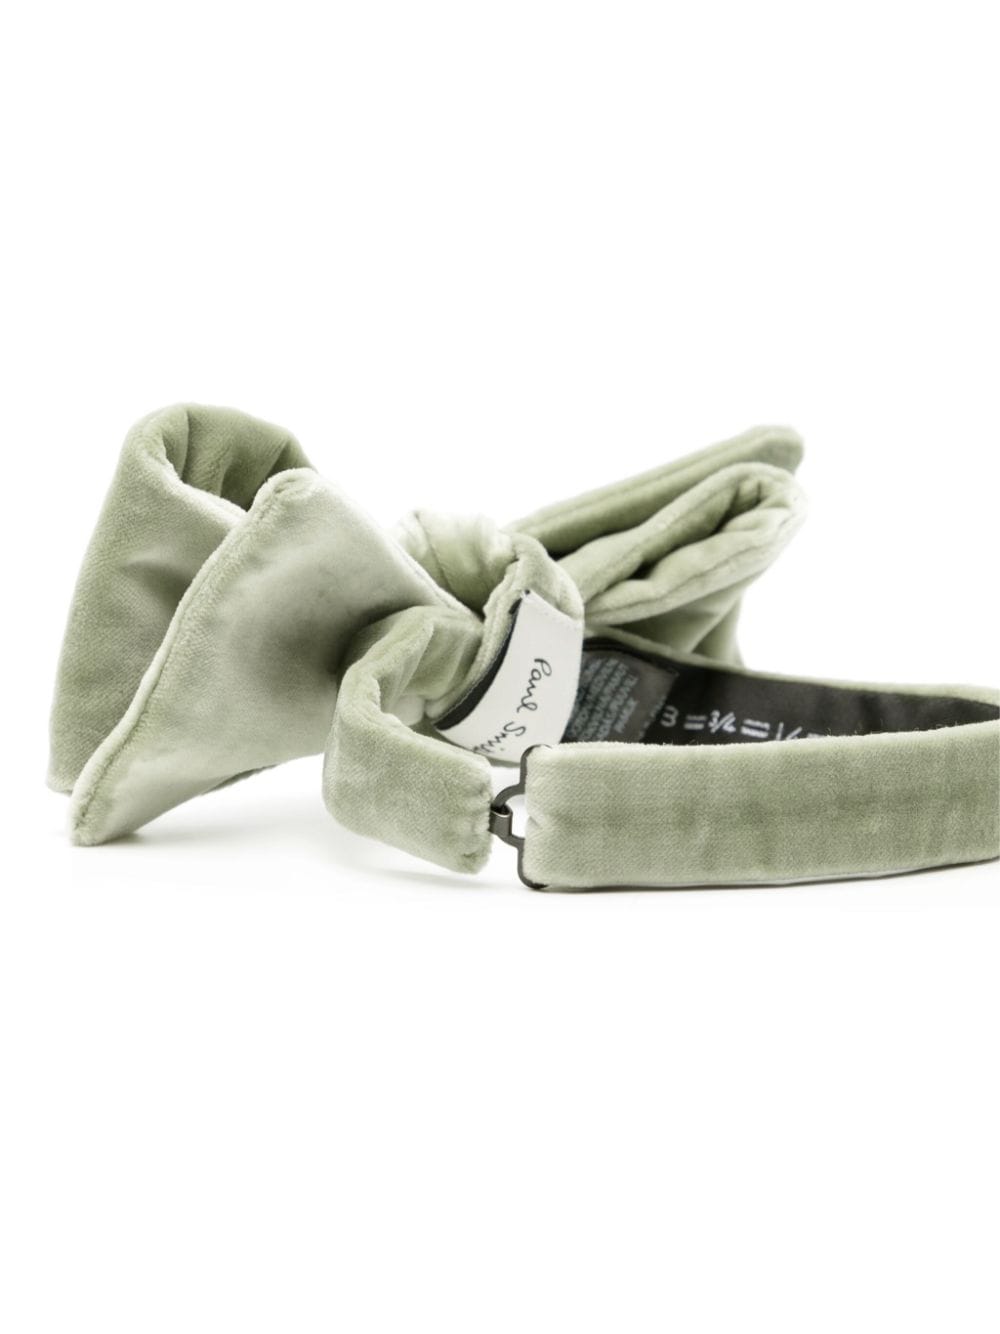 Paul Smith velvet bow tie - Groen